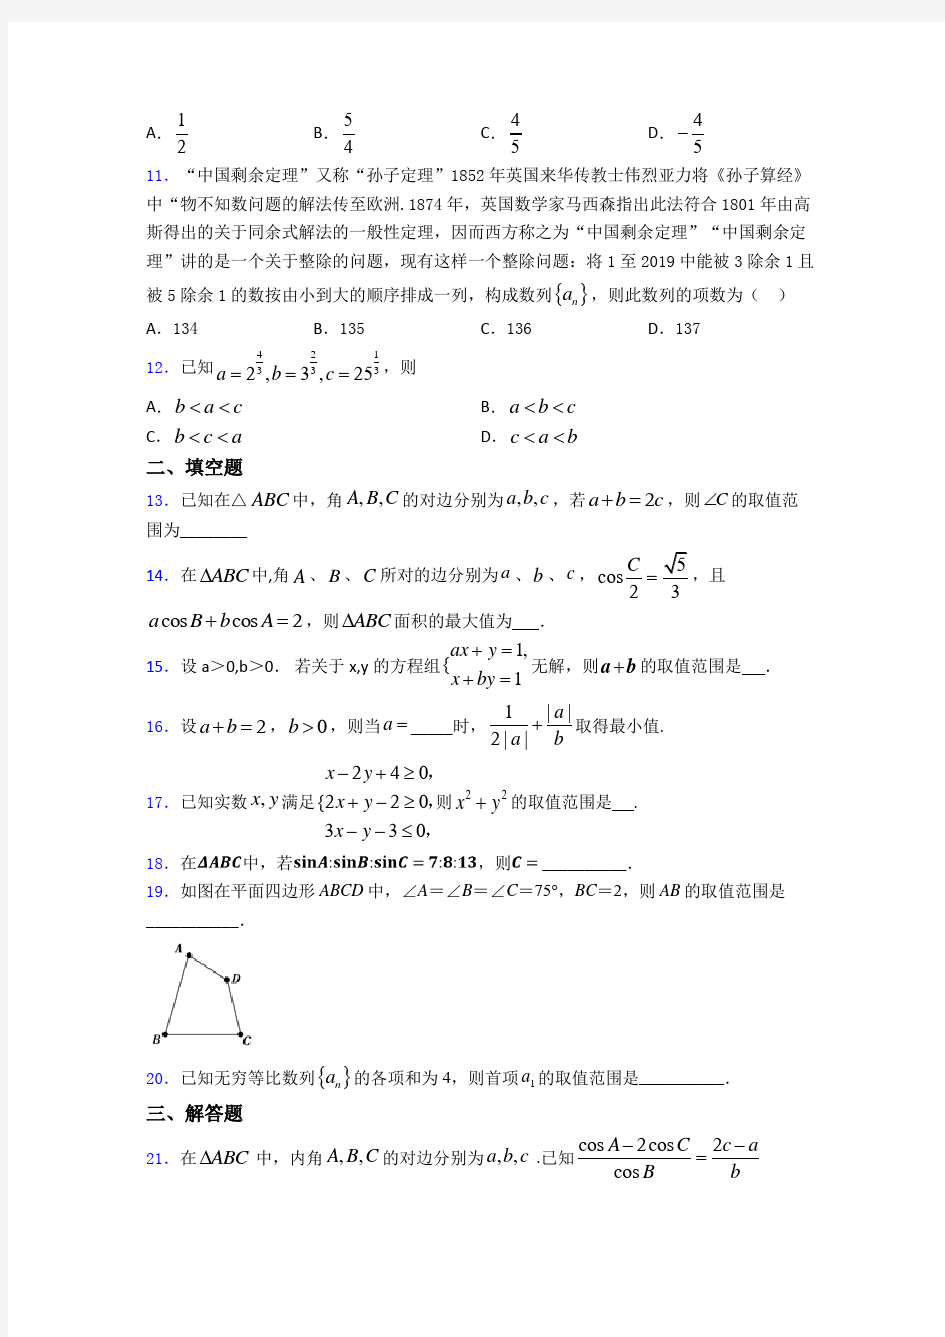 2019年高三数学上期中一模试题(附答案)(2)